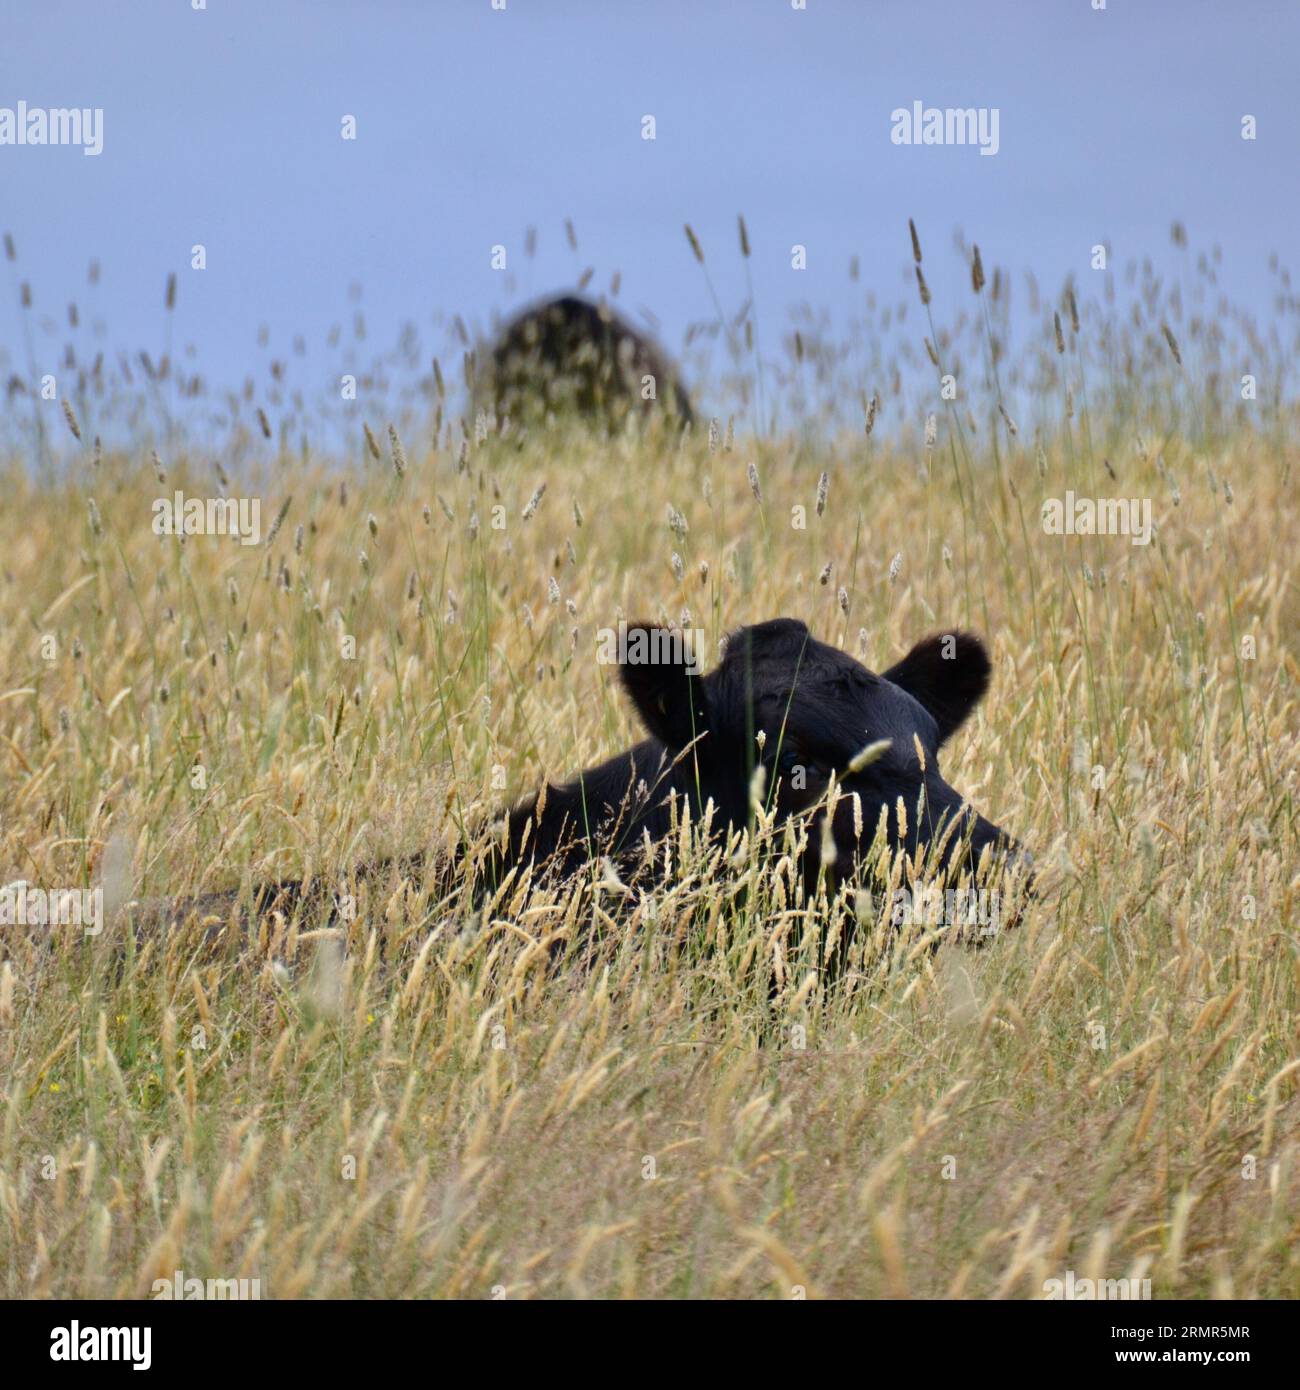 Ganado angus negro o vaca acostado y parcialmente oscurecido por la hierba larga seca en una granja australiana en los calurosos meses de verano Foto de stock